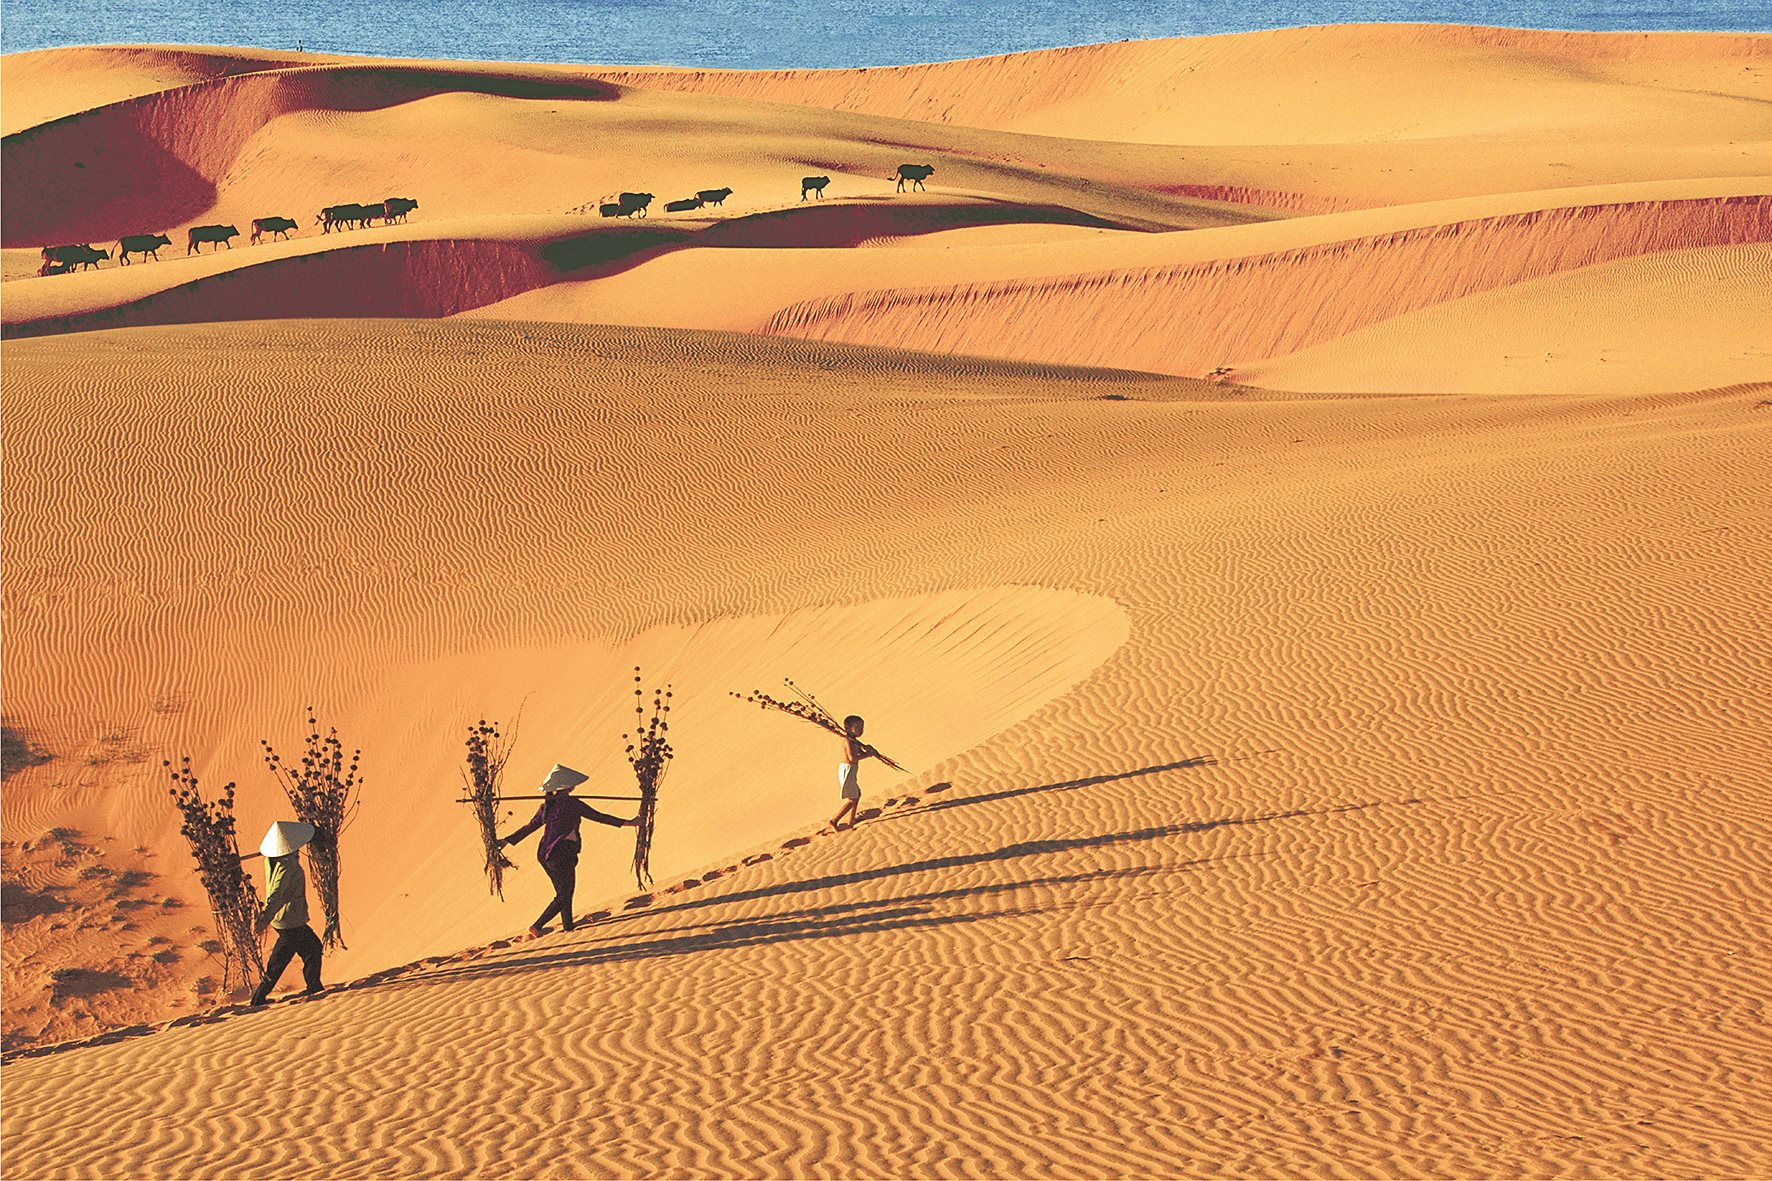 Review đồi cát vàng Mũi Né - Sa mạc huyền bí ở Phan Thiết 